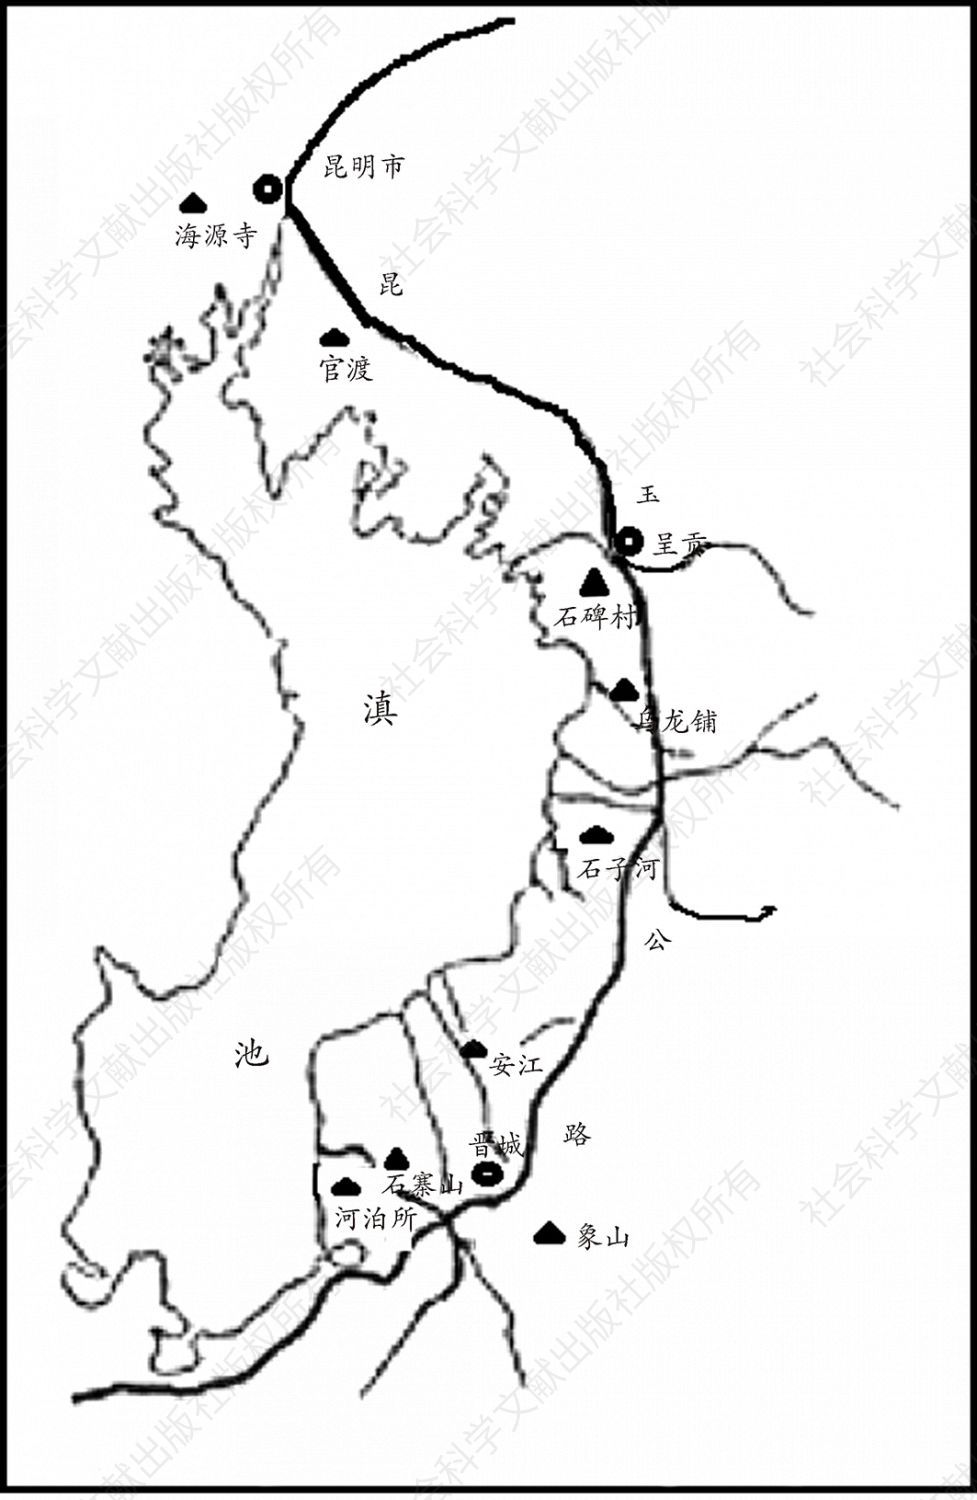 图2-1 滇池东岸新石器时代遗址分布示意